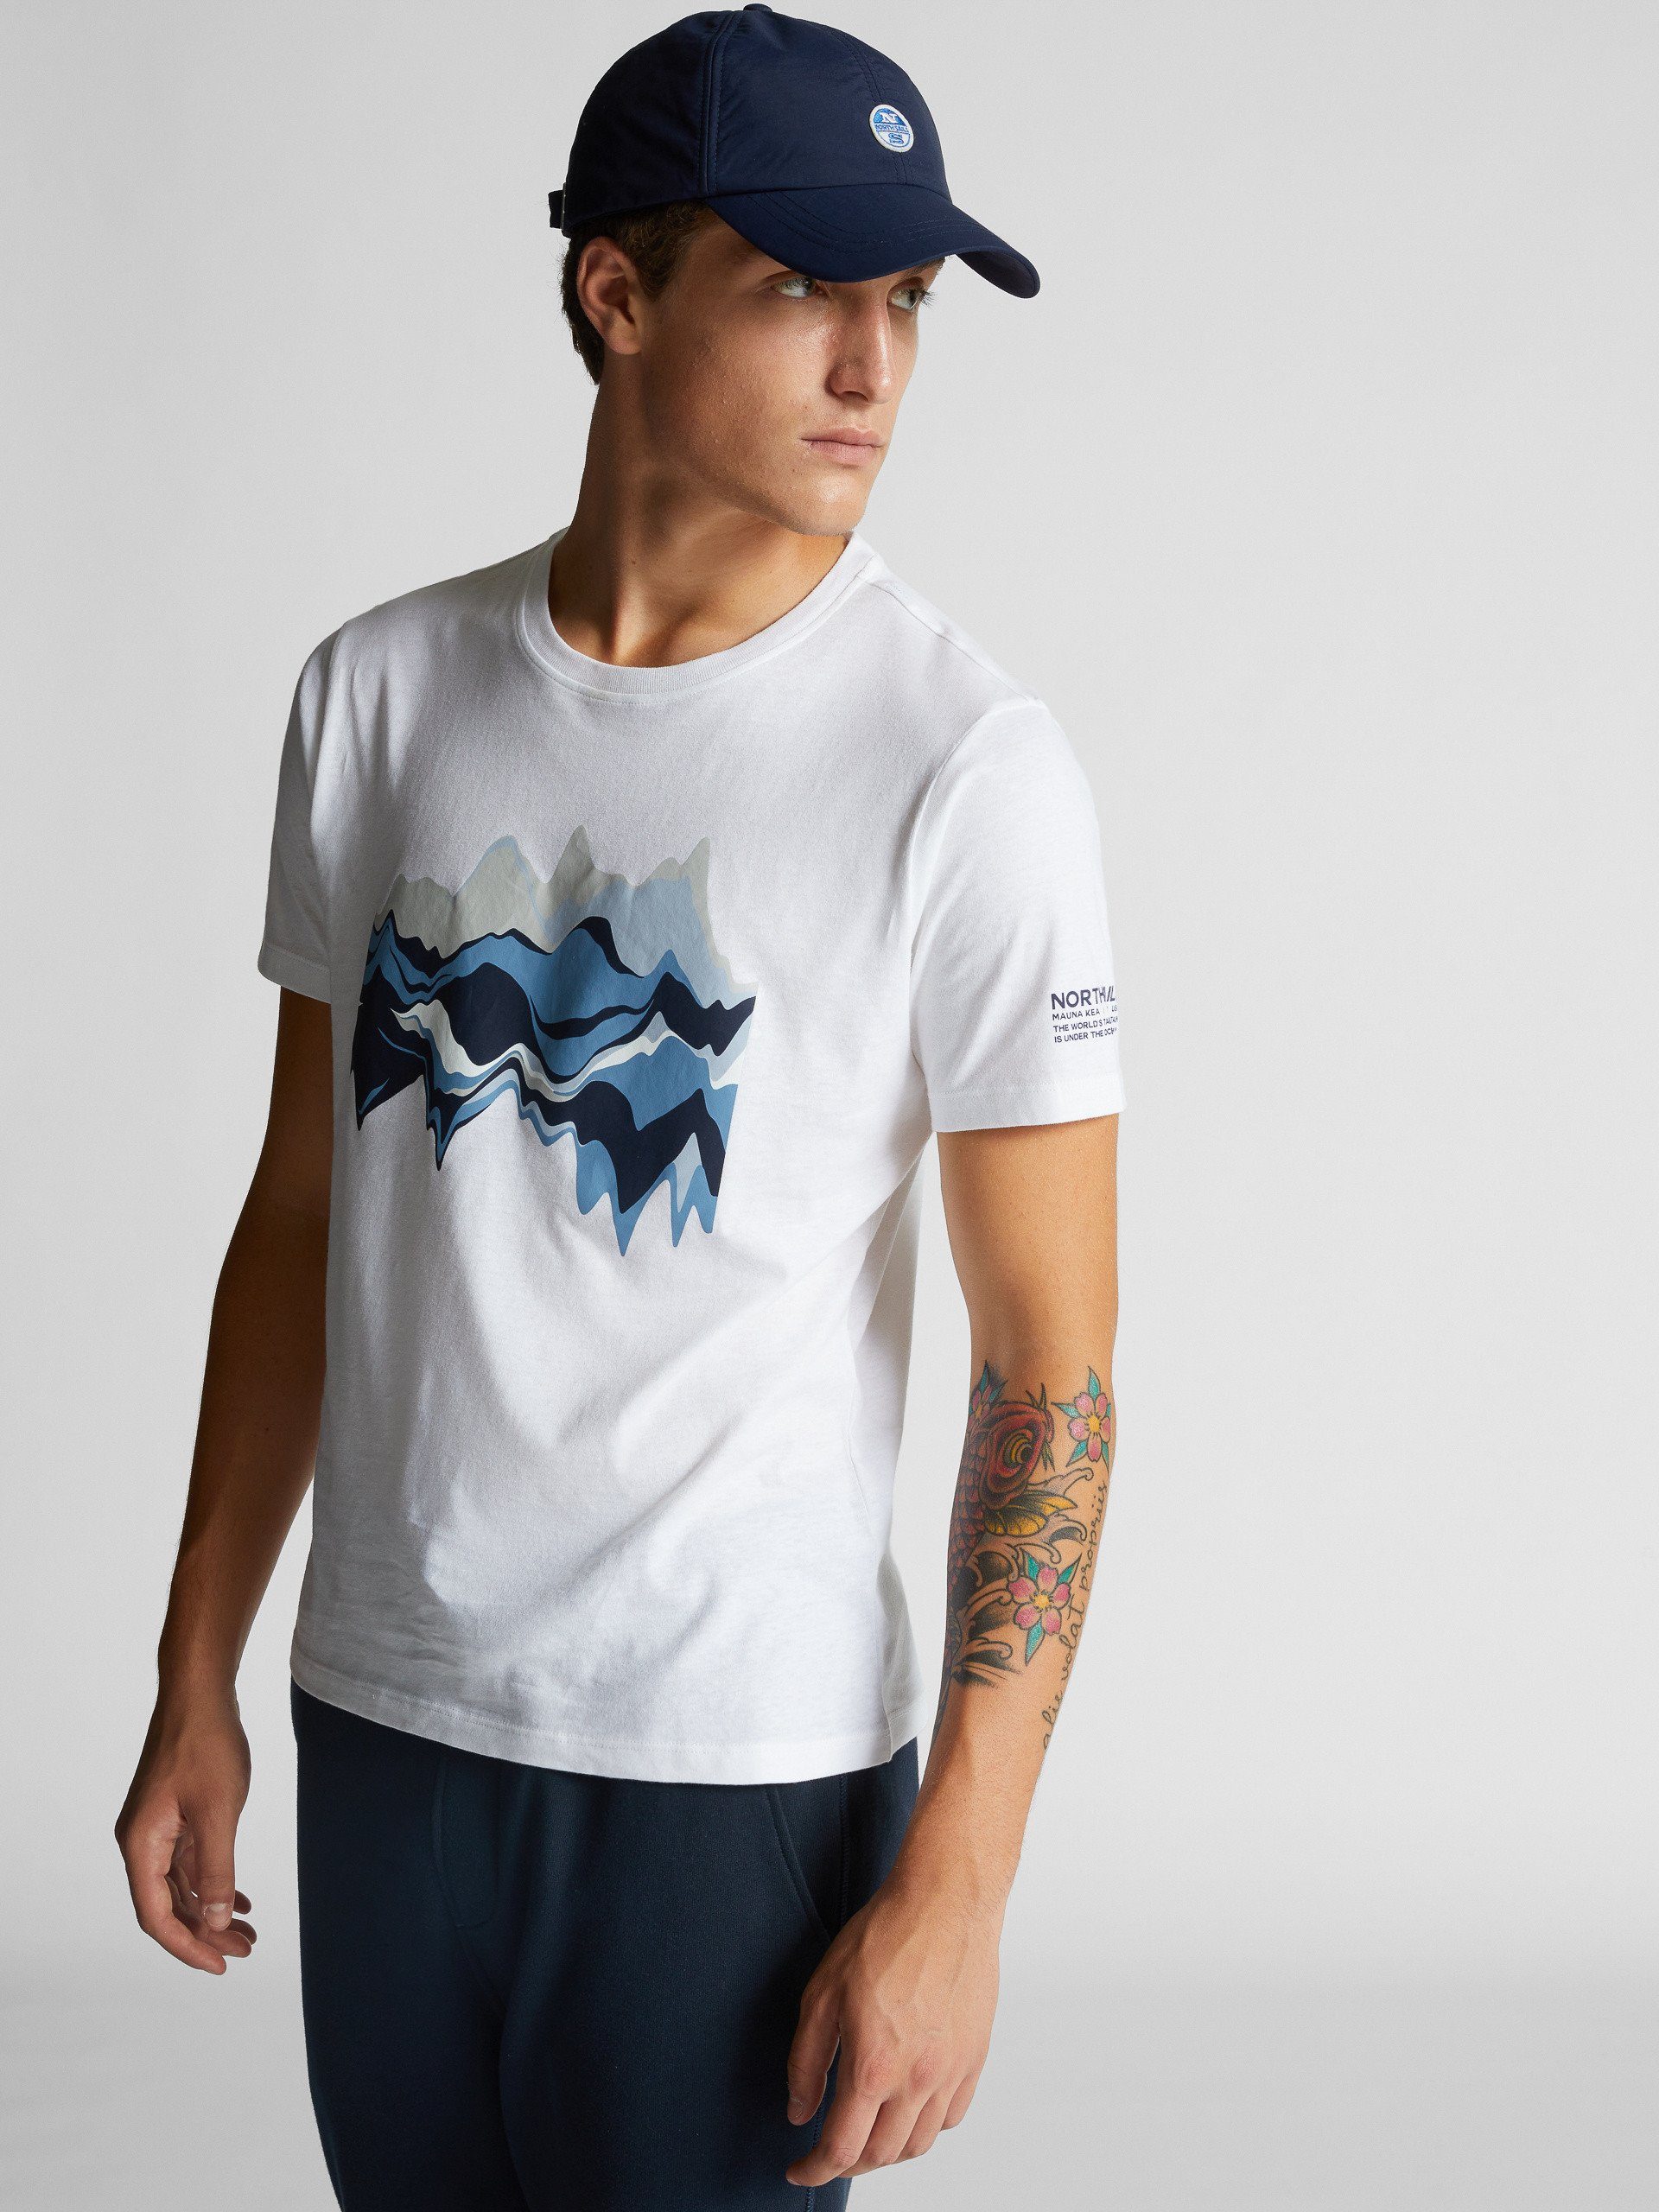 Grafikdruck North Rundhals und T-Shirt WHITE mit Sails T-Shirt